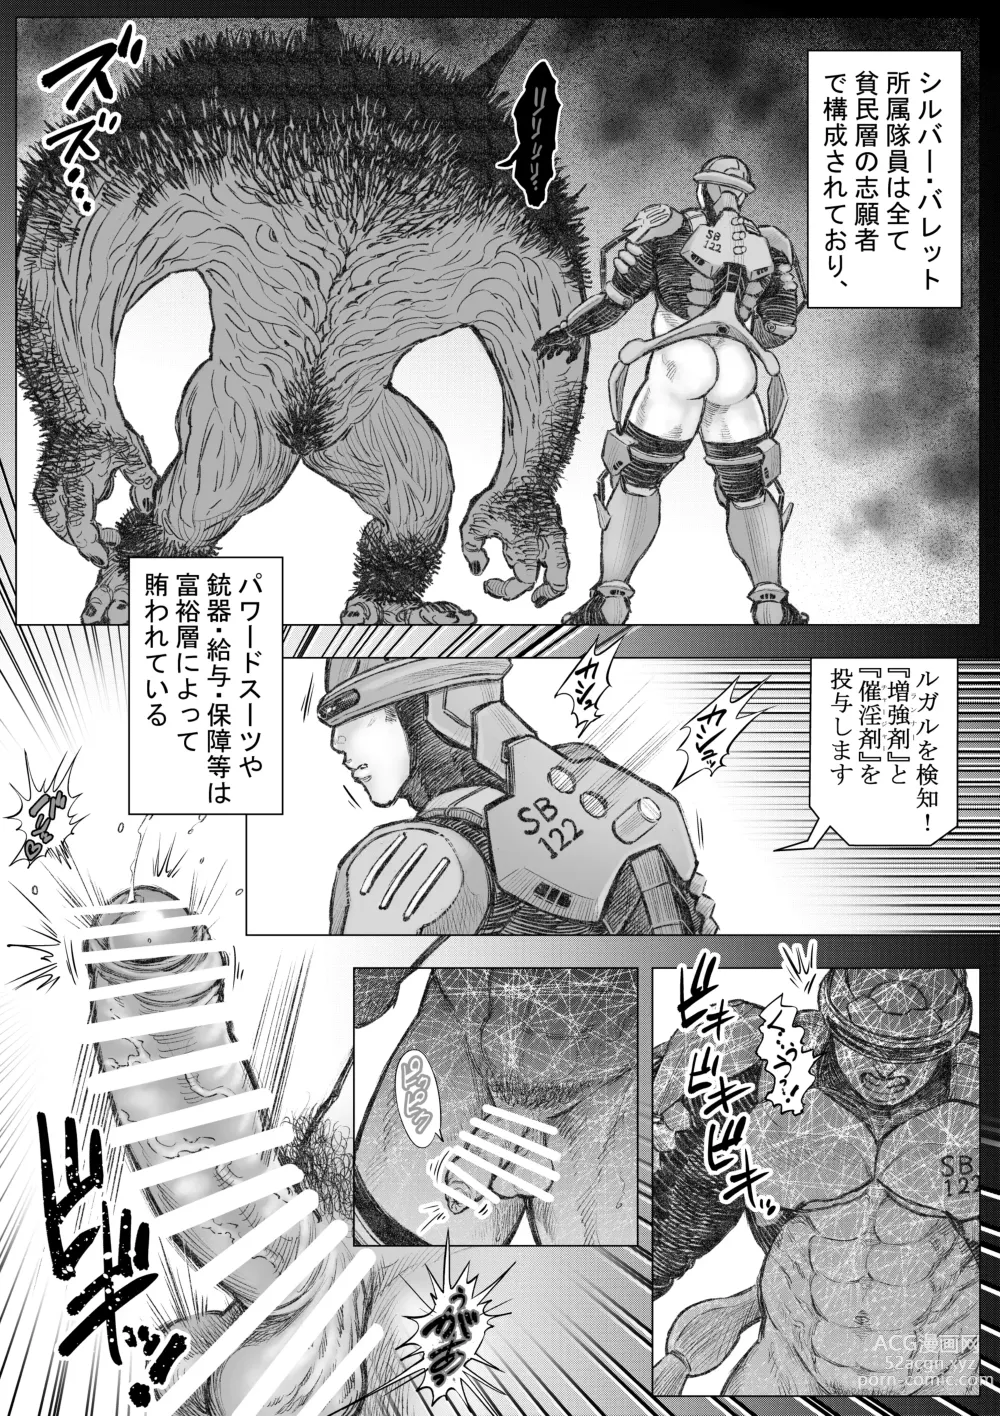 Page 4 of doujinshi Senmetsu Sounyuu Kousetsutai